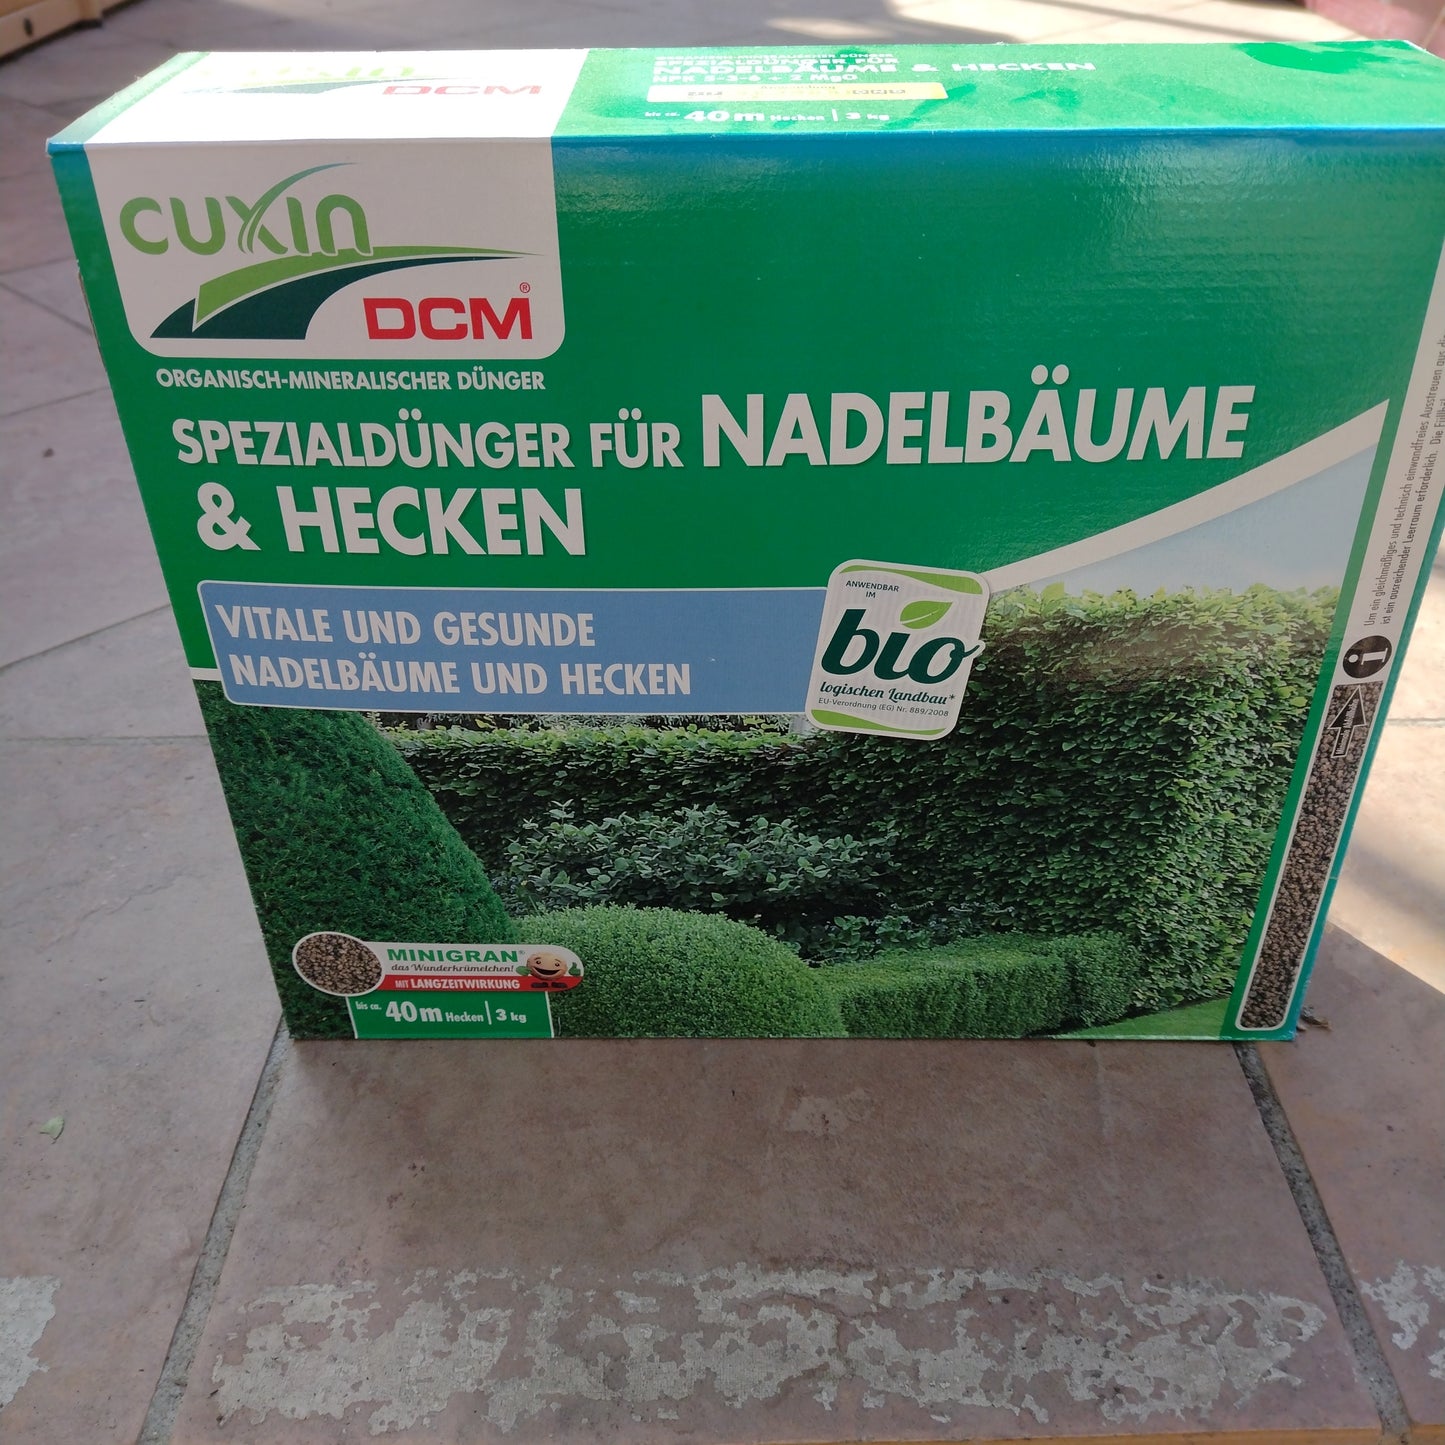 Spezialdünger für Nadelbäume und Hecken 3 kg Cuxin DCM